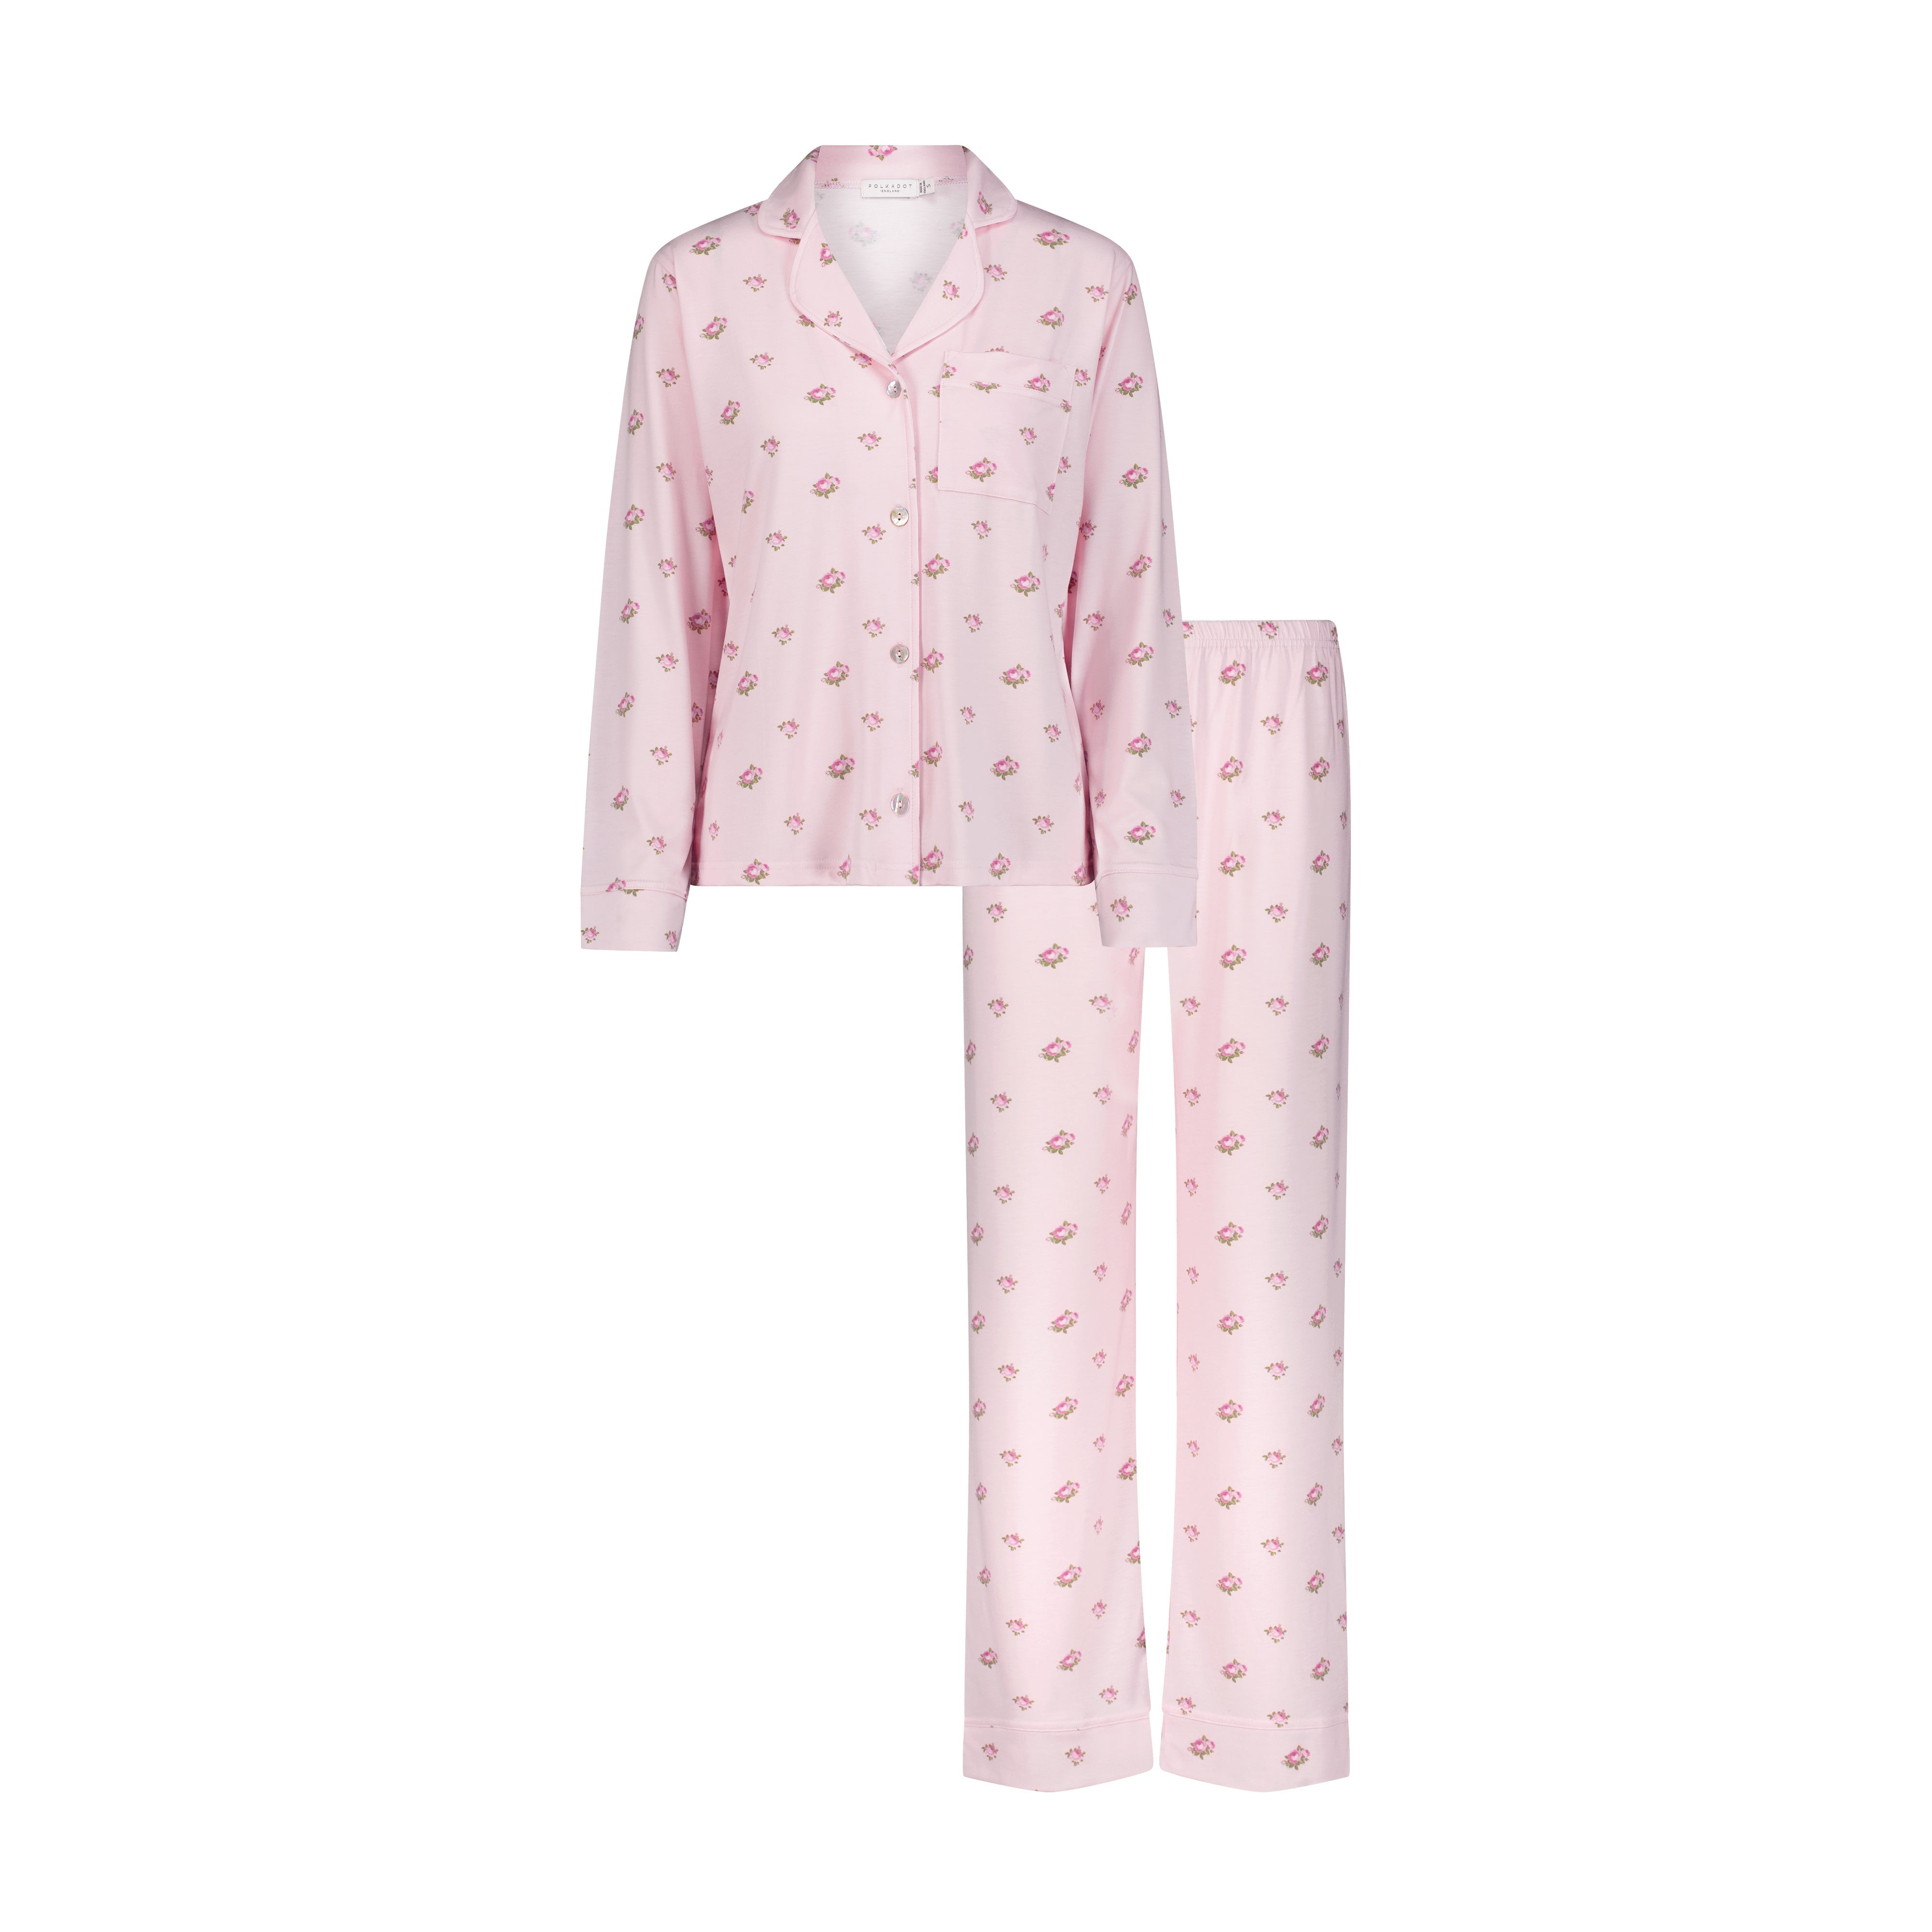 CHARLEY Pajama Set in Pink Vintage Rose Print